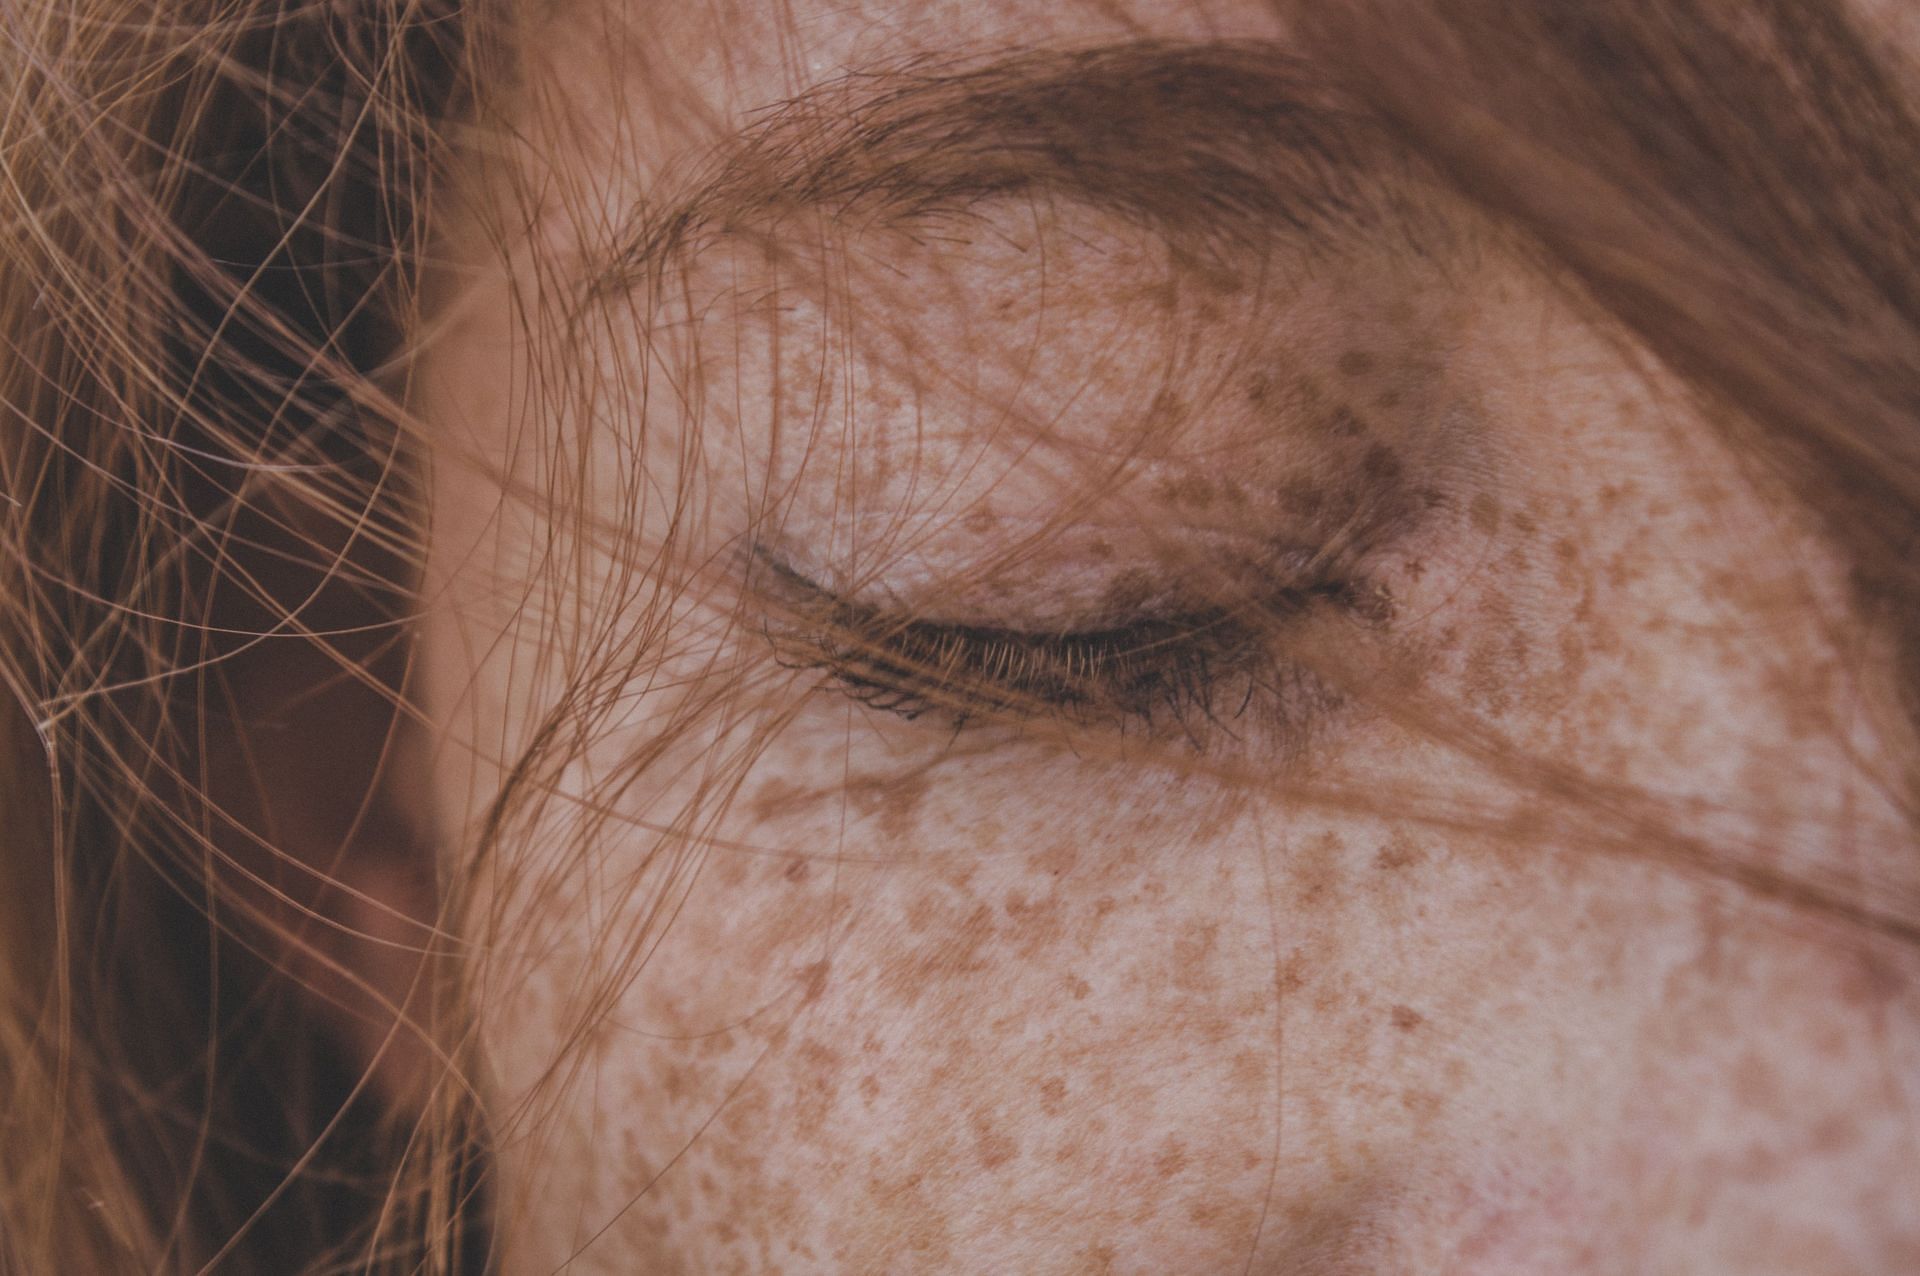 Skin rashes are a common symptom of autoimmune diseases. (Image via Unsplash/Chermiti Mohamed)